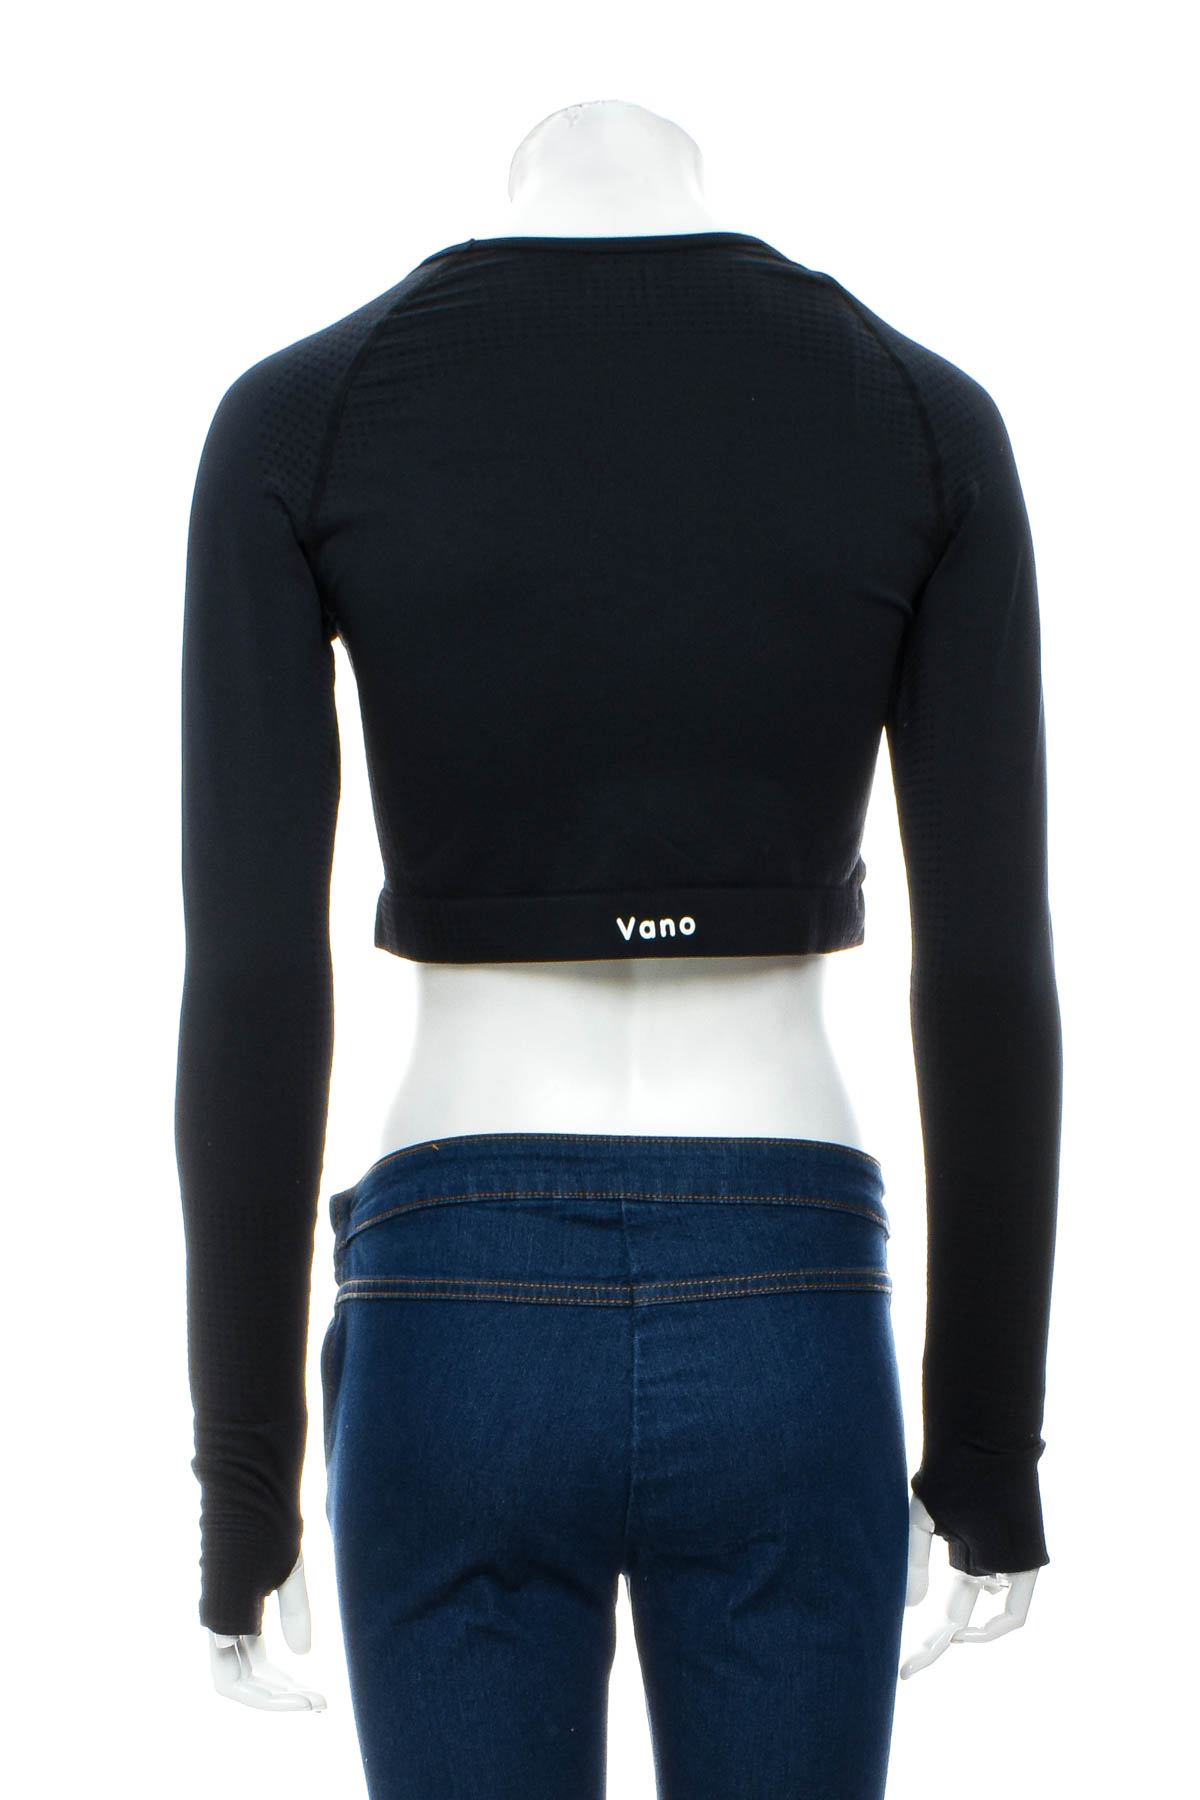 Women's sport blouse - VANO Wear - 1